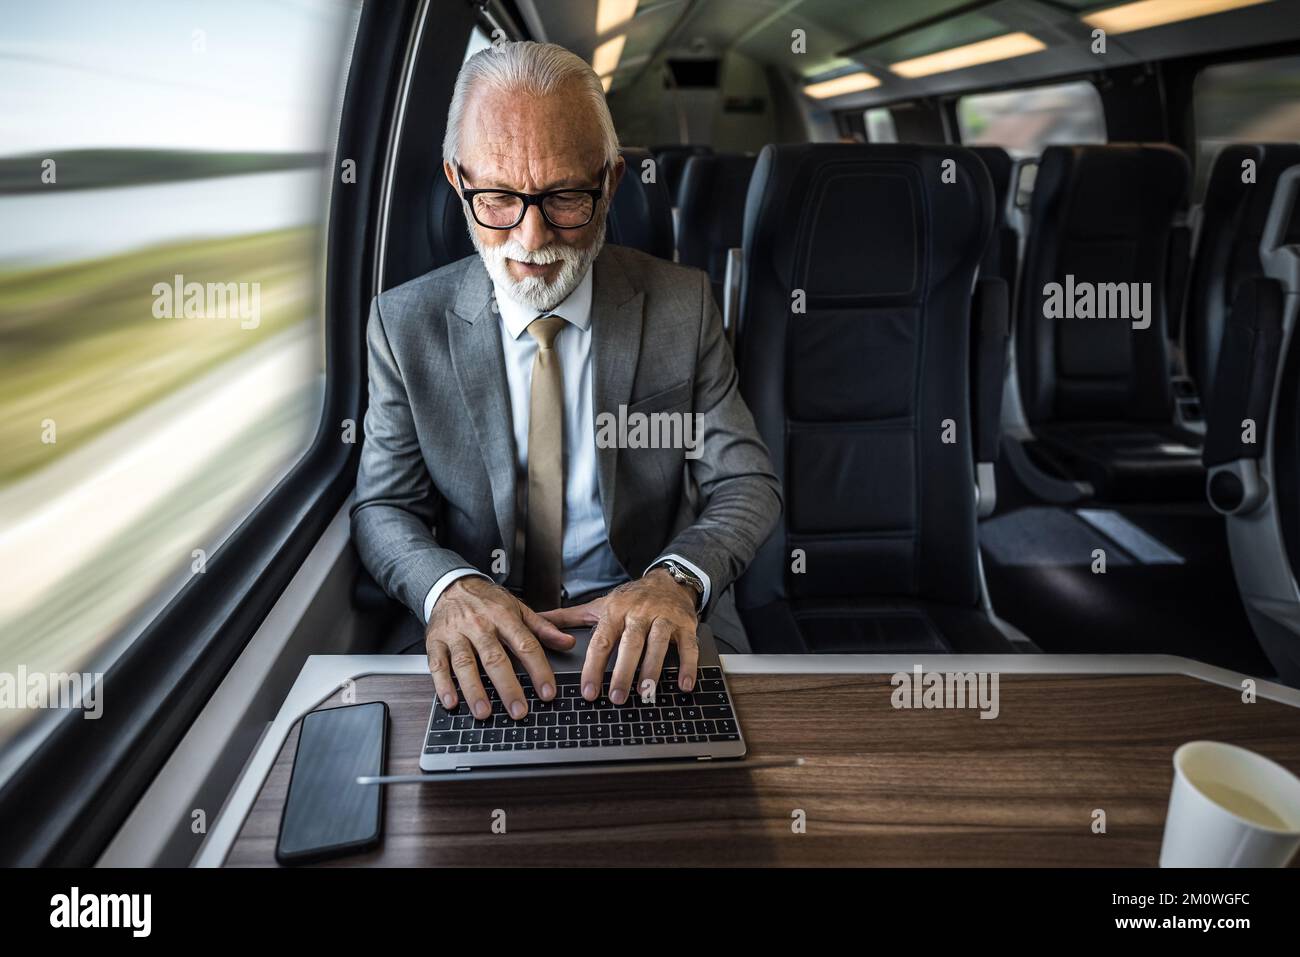 La vue en grand angle d'un homme professionnel utilise un ordinateur portable sur une table. L'homme d'affaires senior est assis par la fenêtre dans le train de voyageurs. Il porte un costume formel d Banque D'Images